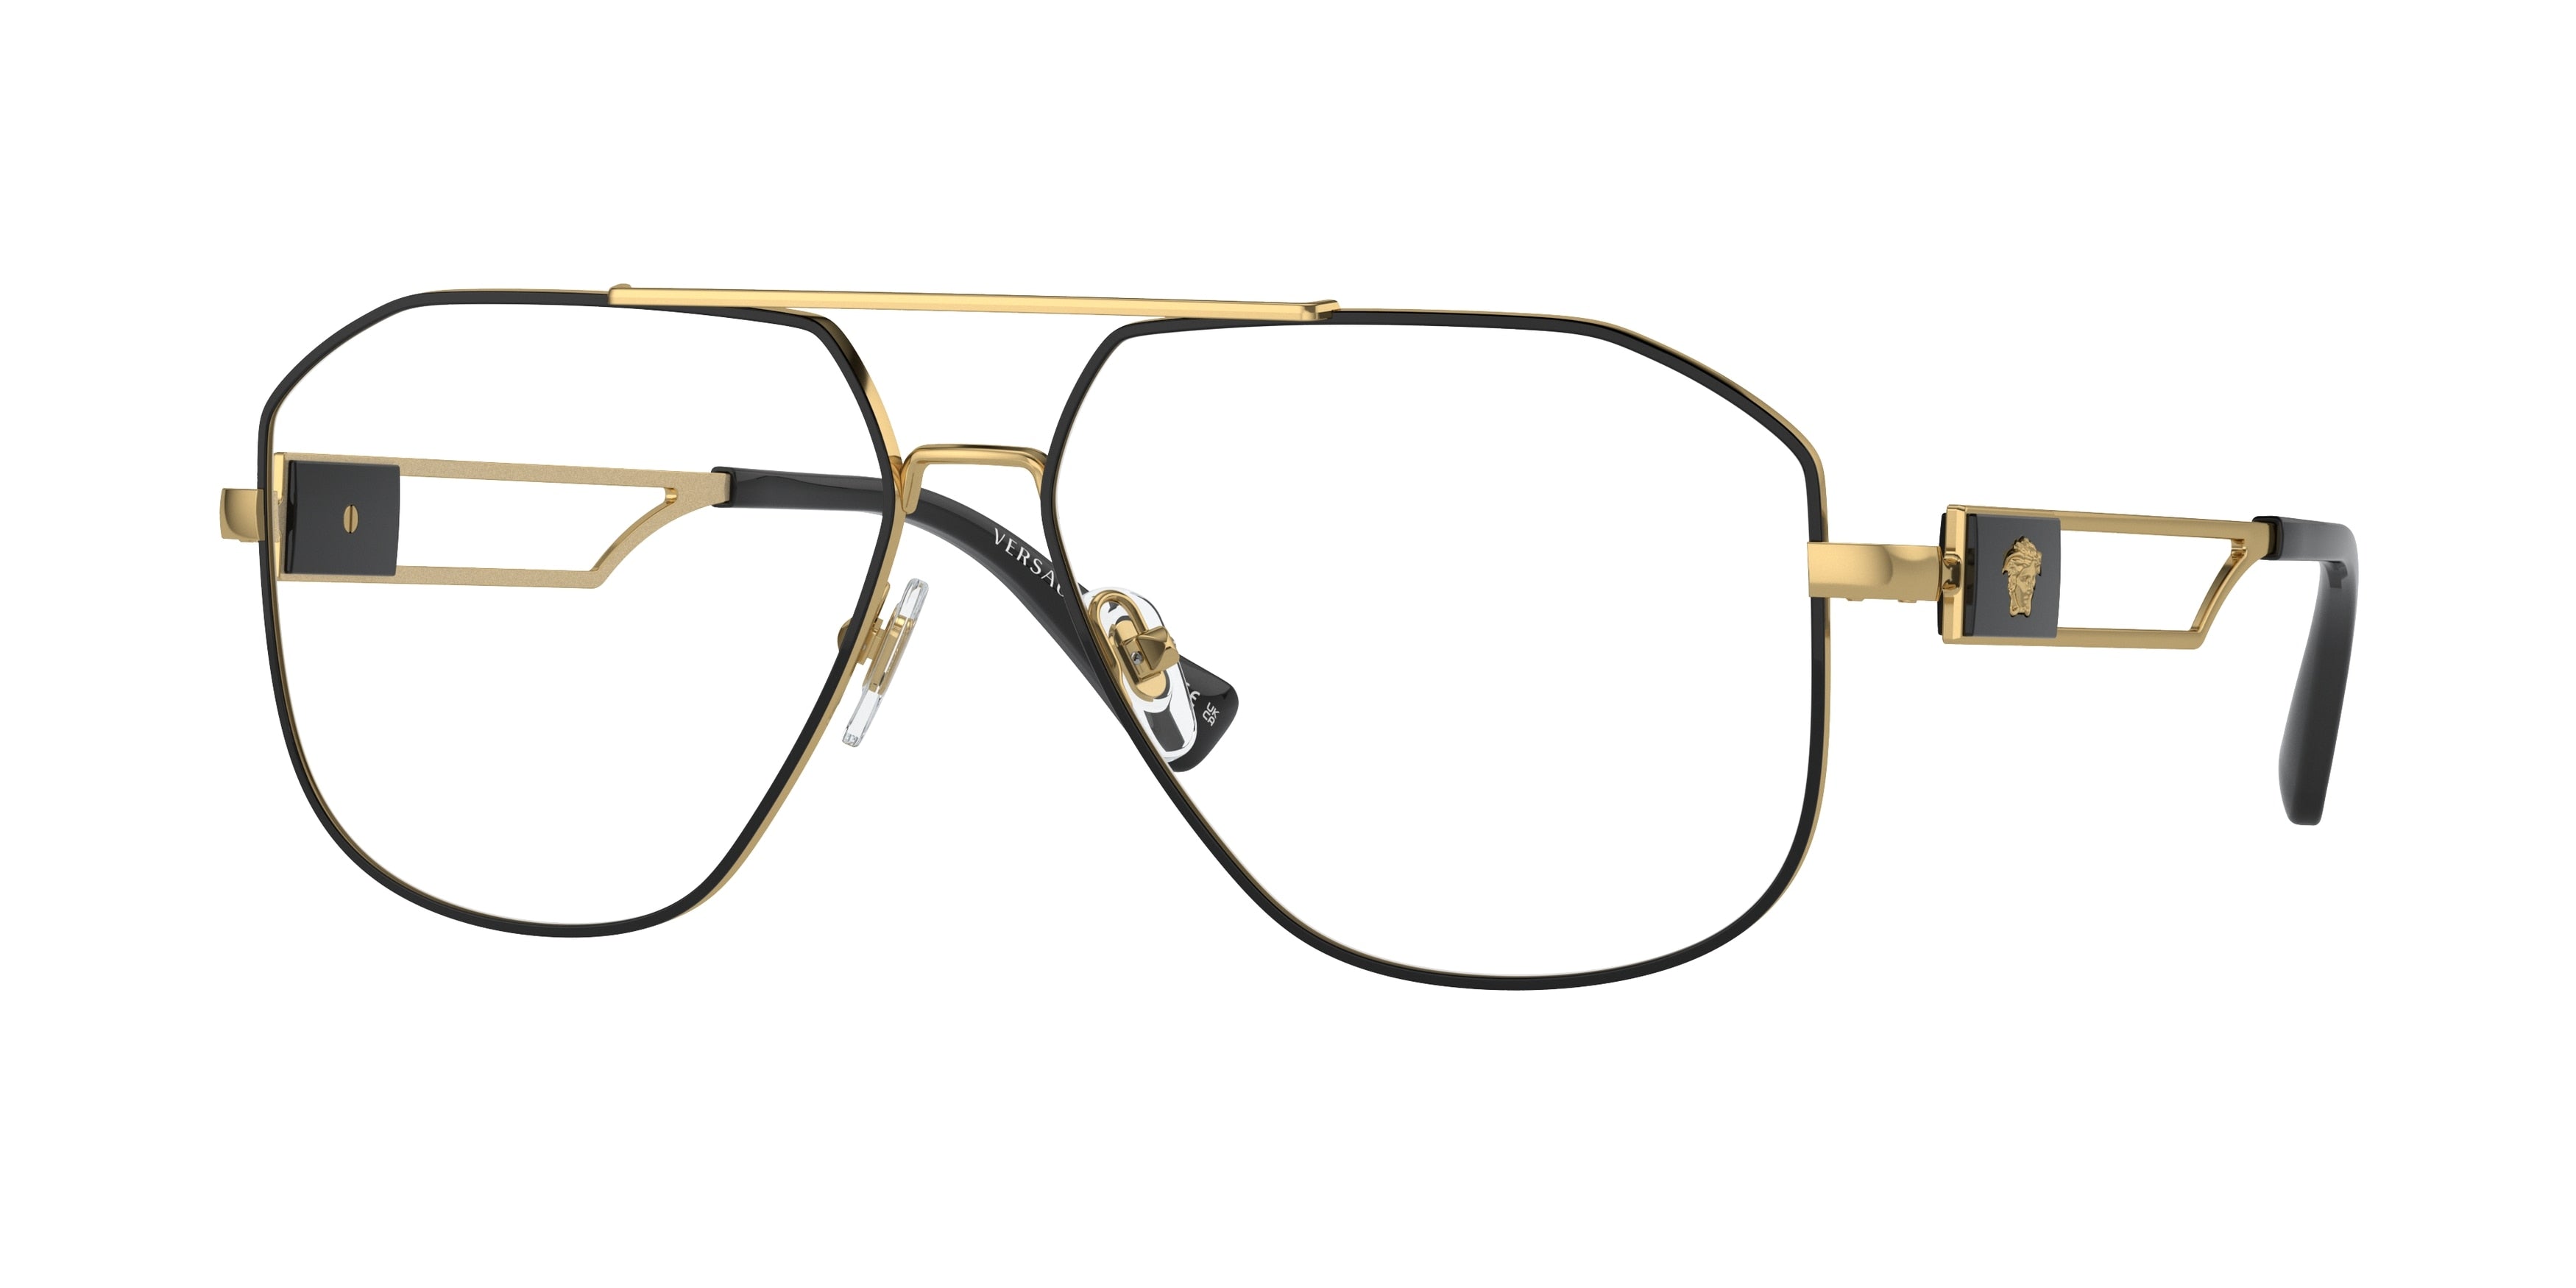 Versace VE1287 Pilot Eyeglasses  1443-Black/Gold 59-145-13 - Color Map Black